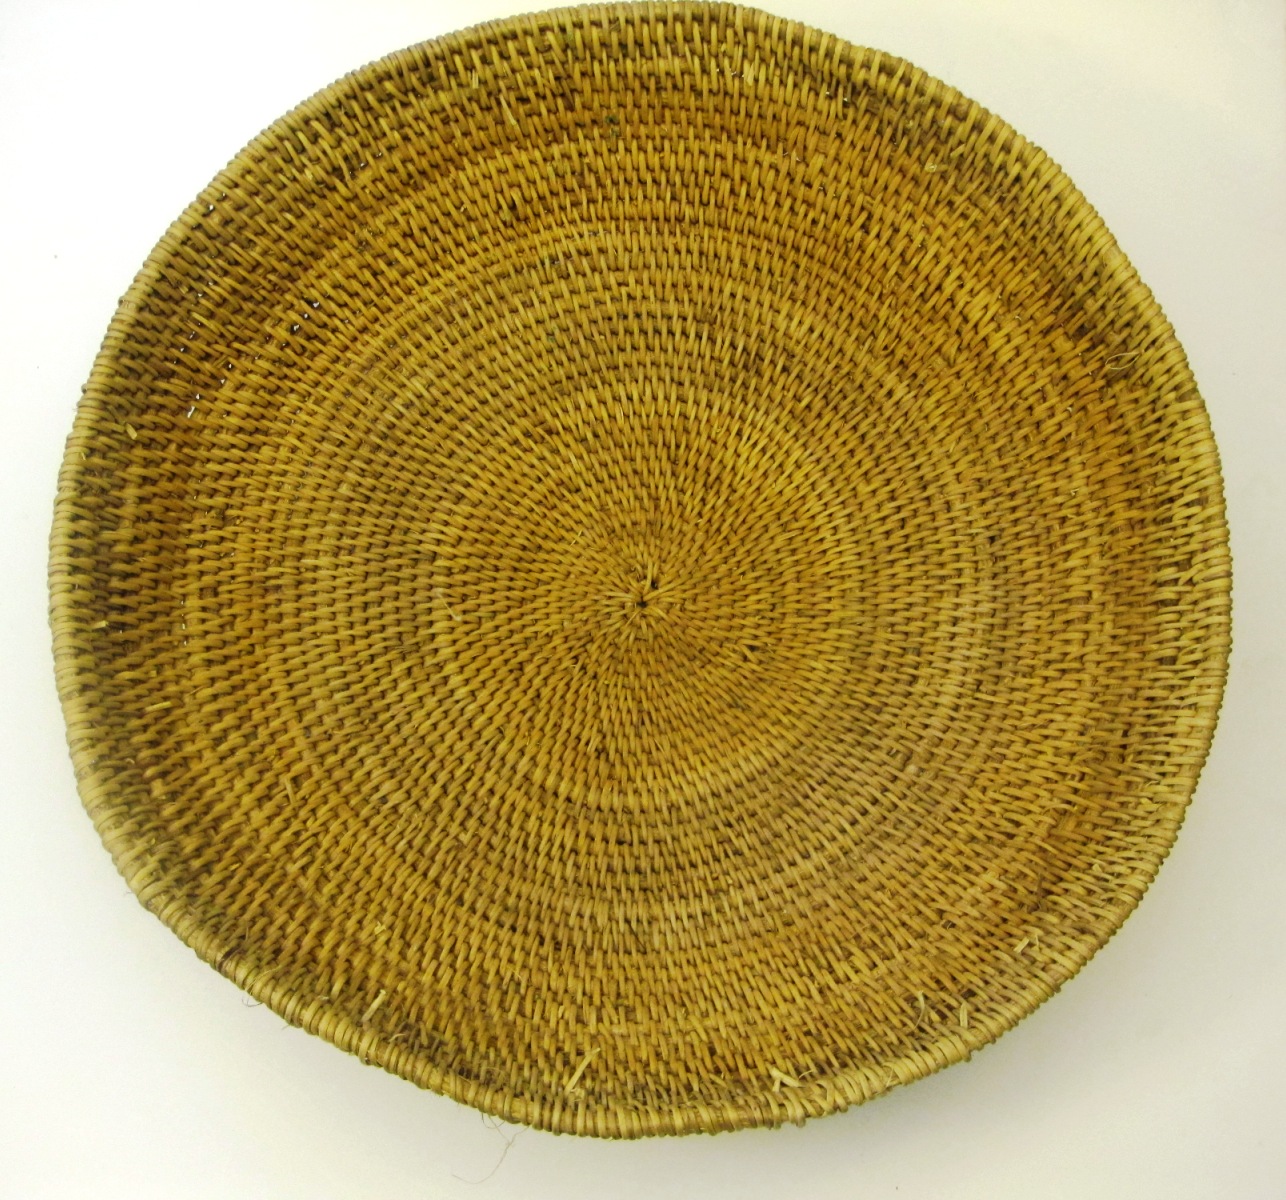 Buhera Oval Basket from Zimbabwe #001